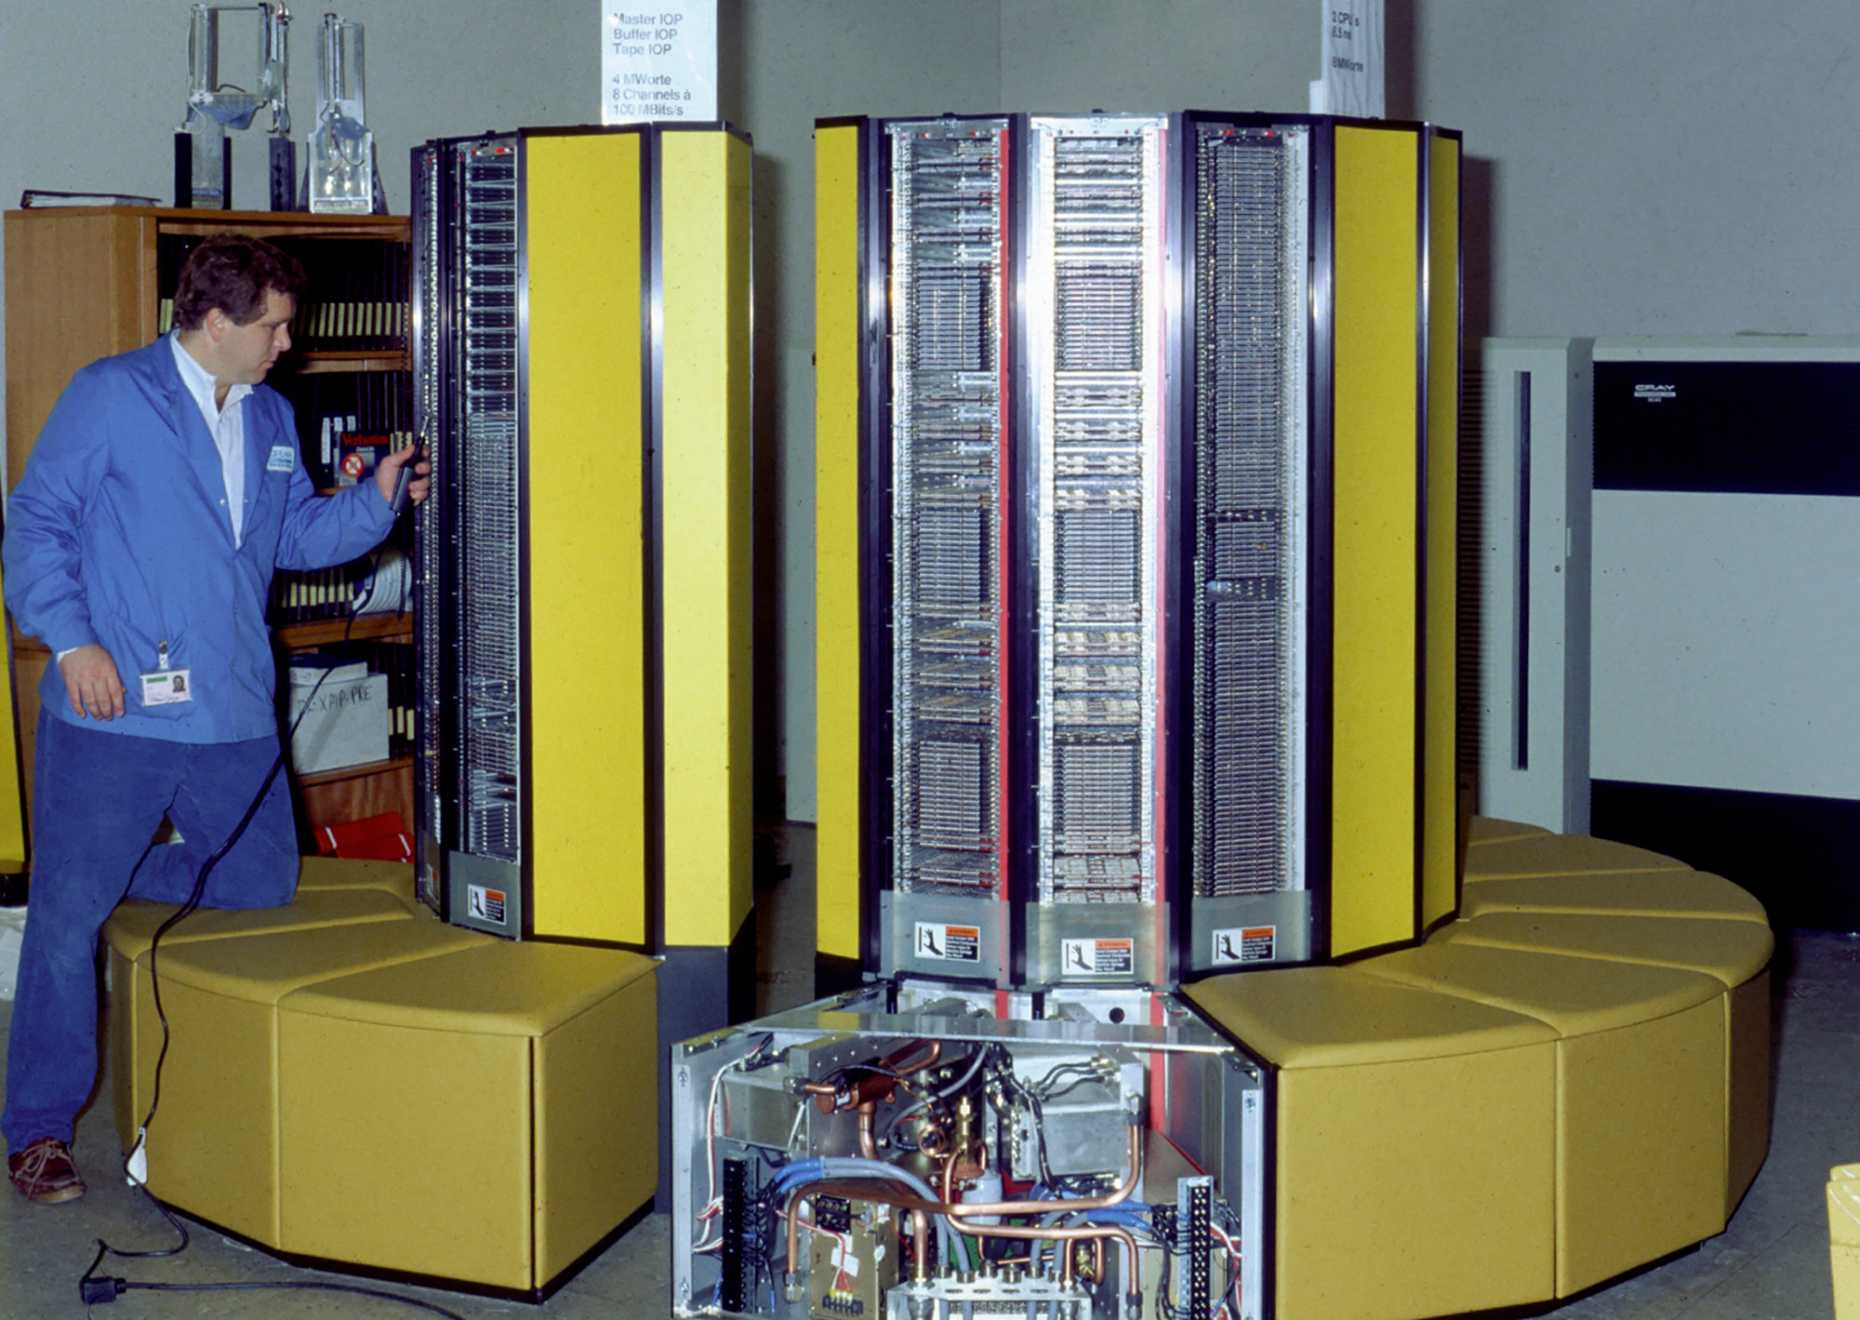 Der Supercomputer Cray X-MP/28 wird im Rechenzentrum installiert. Foto: ETH-Bibliothek